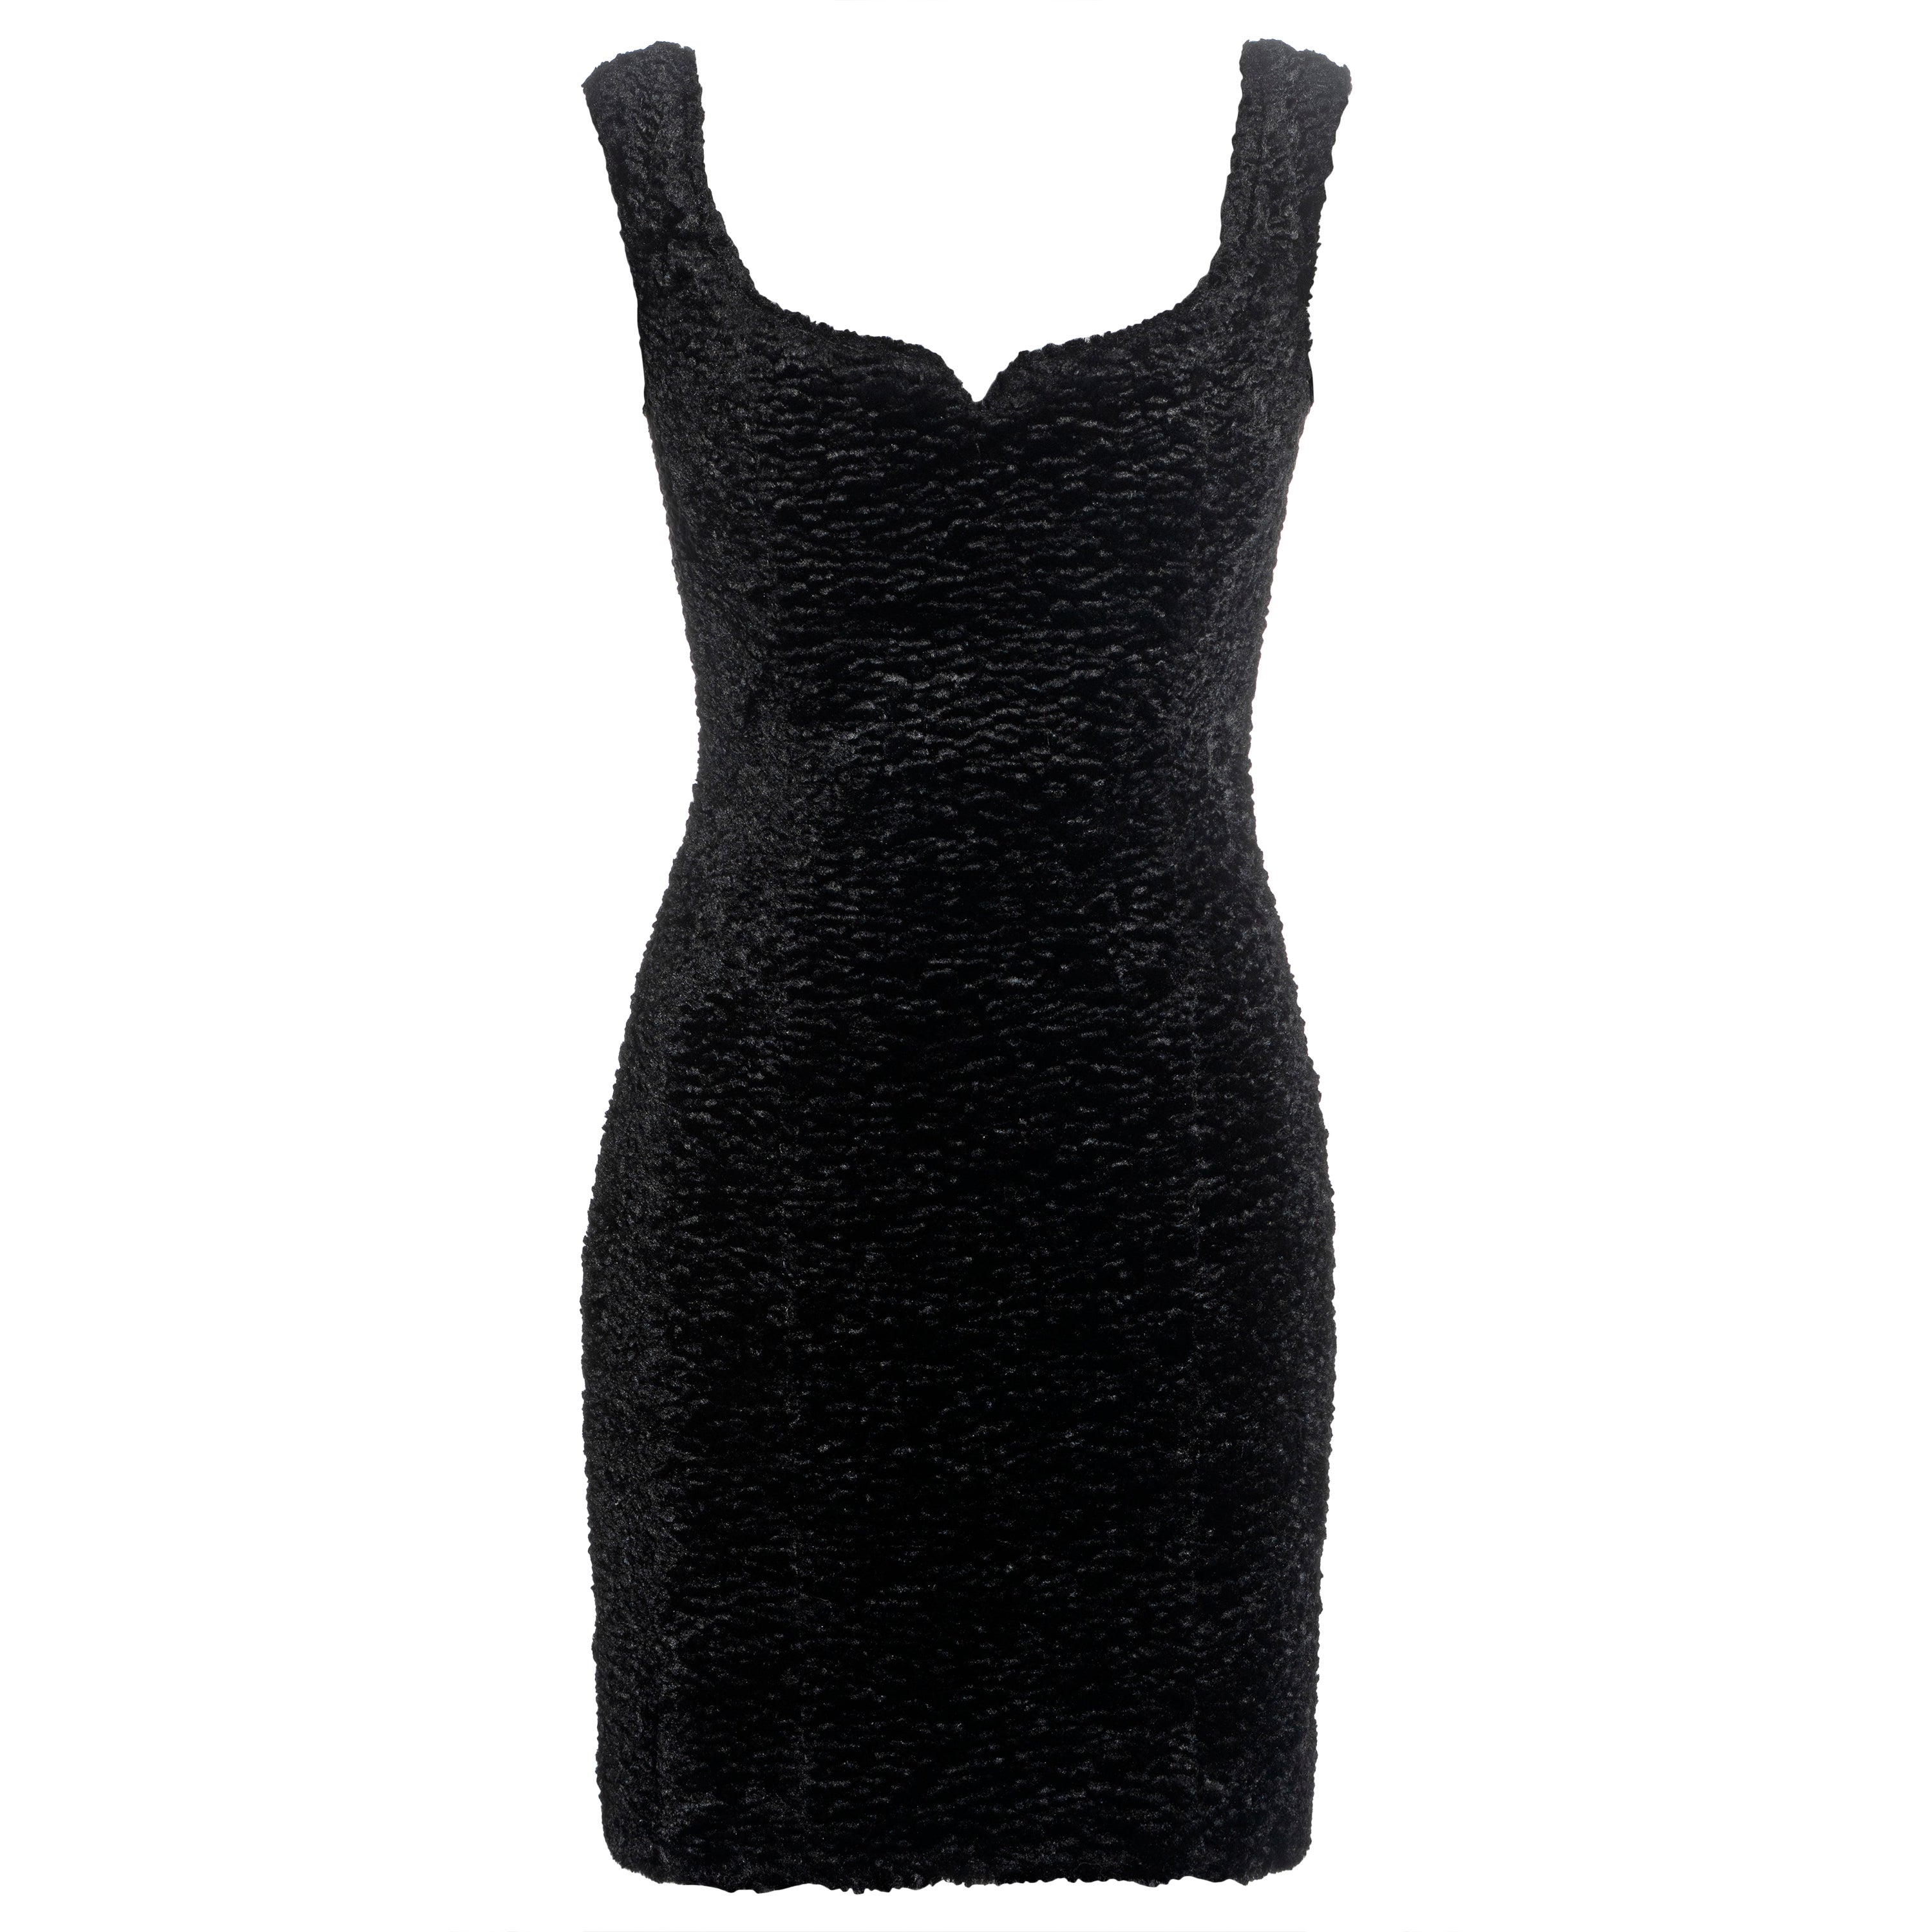 Vivienne Westwood black faux fur mini dress with built in corset, fw 1994